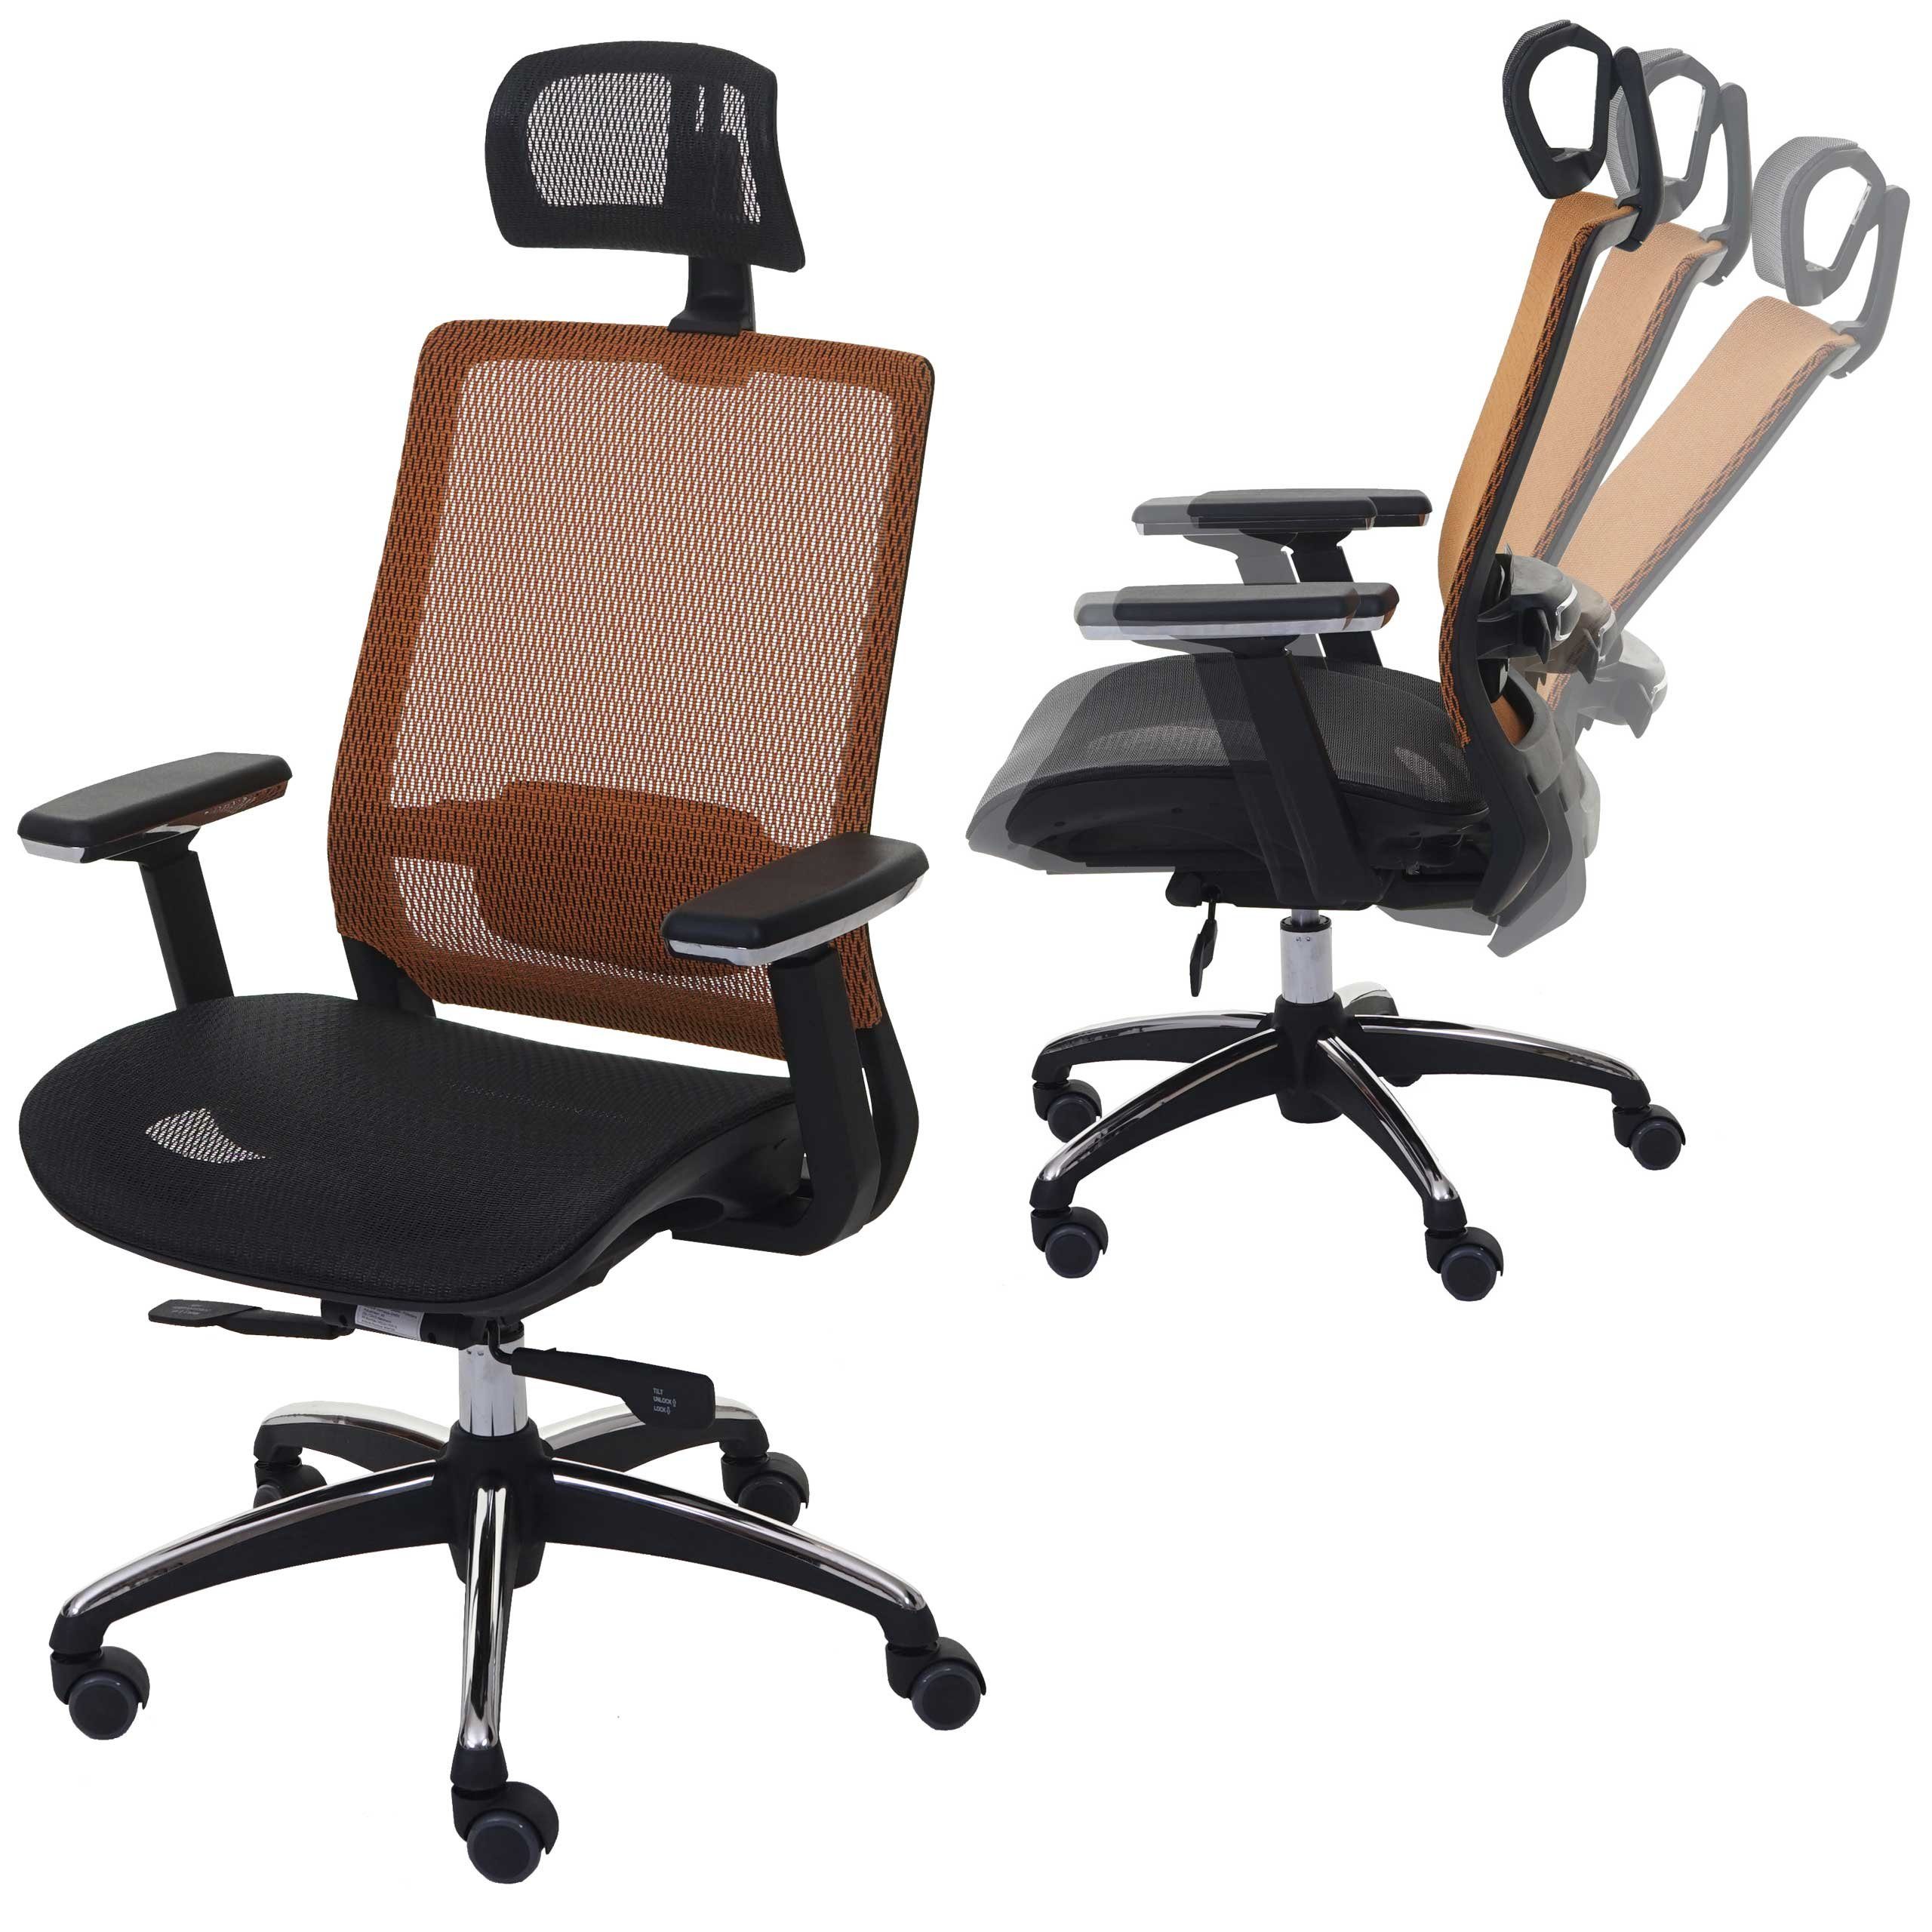 MCW Schreibtischstuhl MCW-A20, In der Tiefe verstellbare Sitzfläche, Lendenwirbelstütze anpassbar schwarz-orange